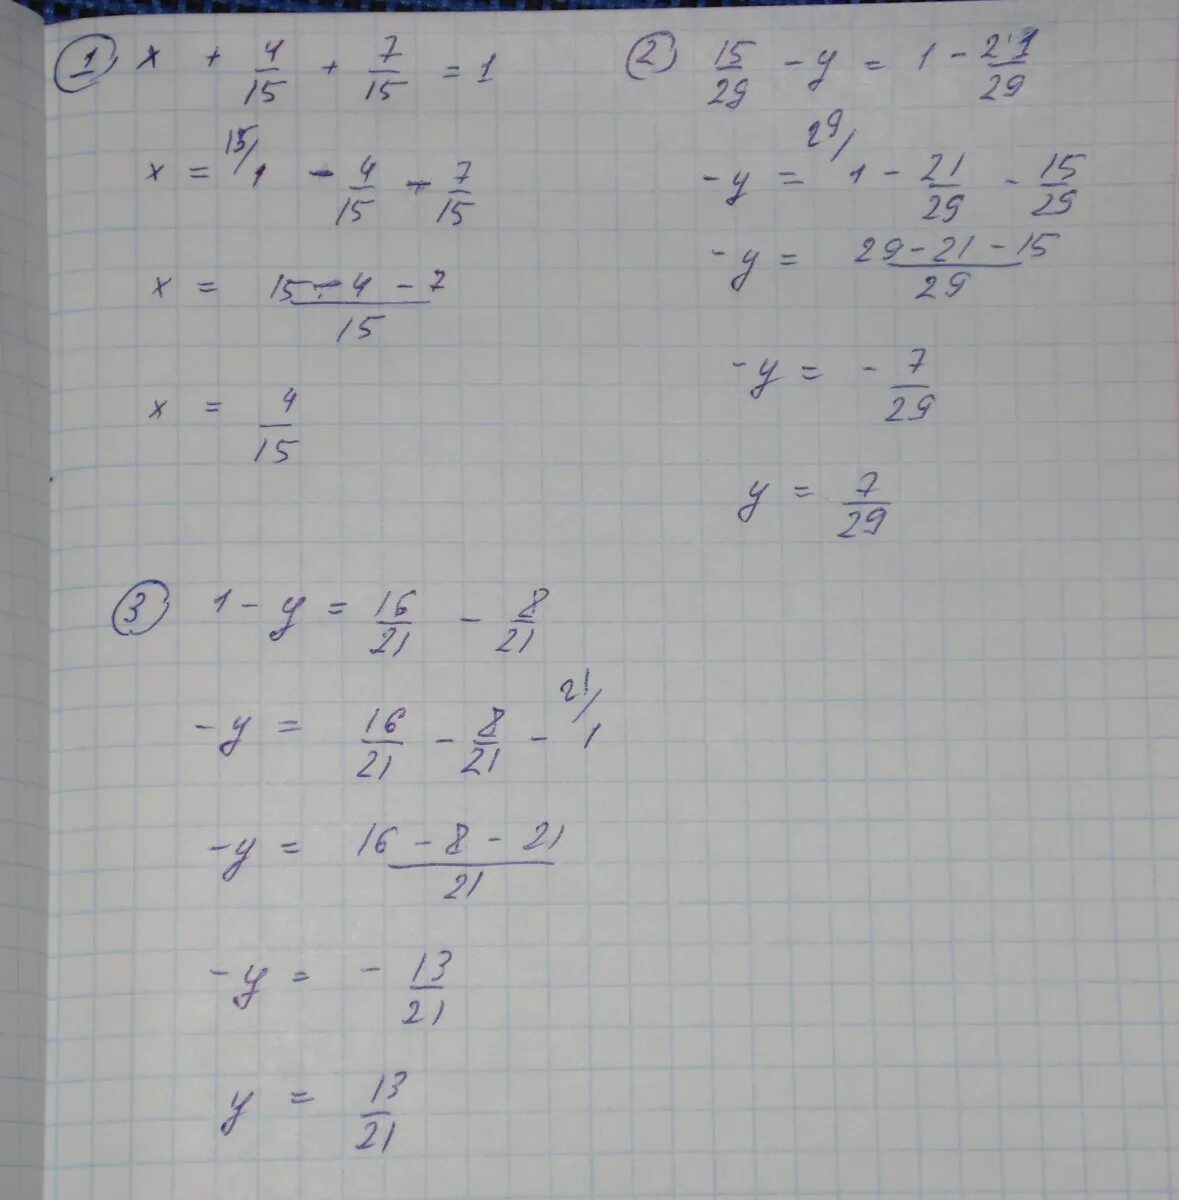 21 решите уравнение 2. Решить уравнение 15. Решение уравнения 15х-8х=21. Решение уравнения 1/4*x=1 1/7. -1*-7*Х=21 решите уравнение.